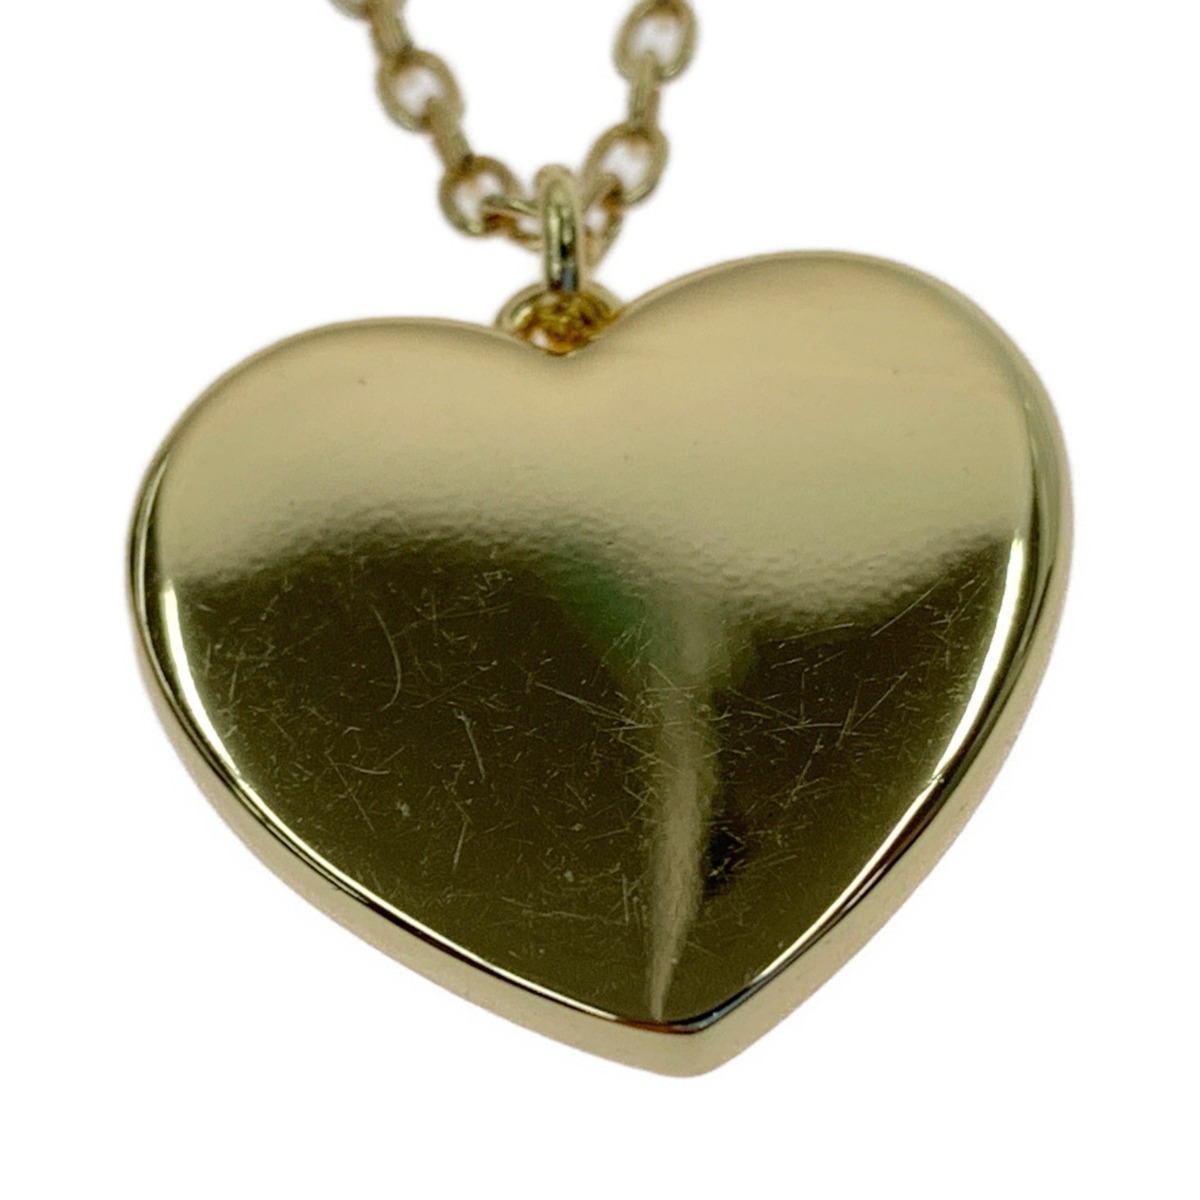 00 COACH Coach heart motif necklace pendant C7947 pink x Gold a little scratch . dirt equipped 